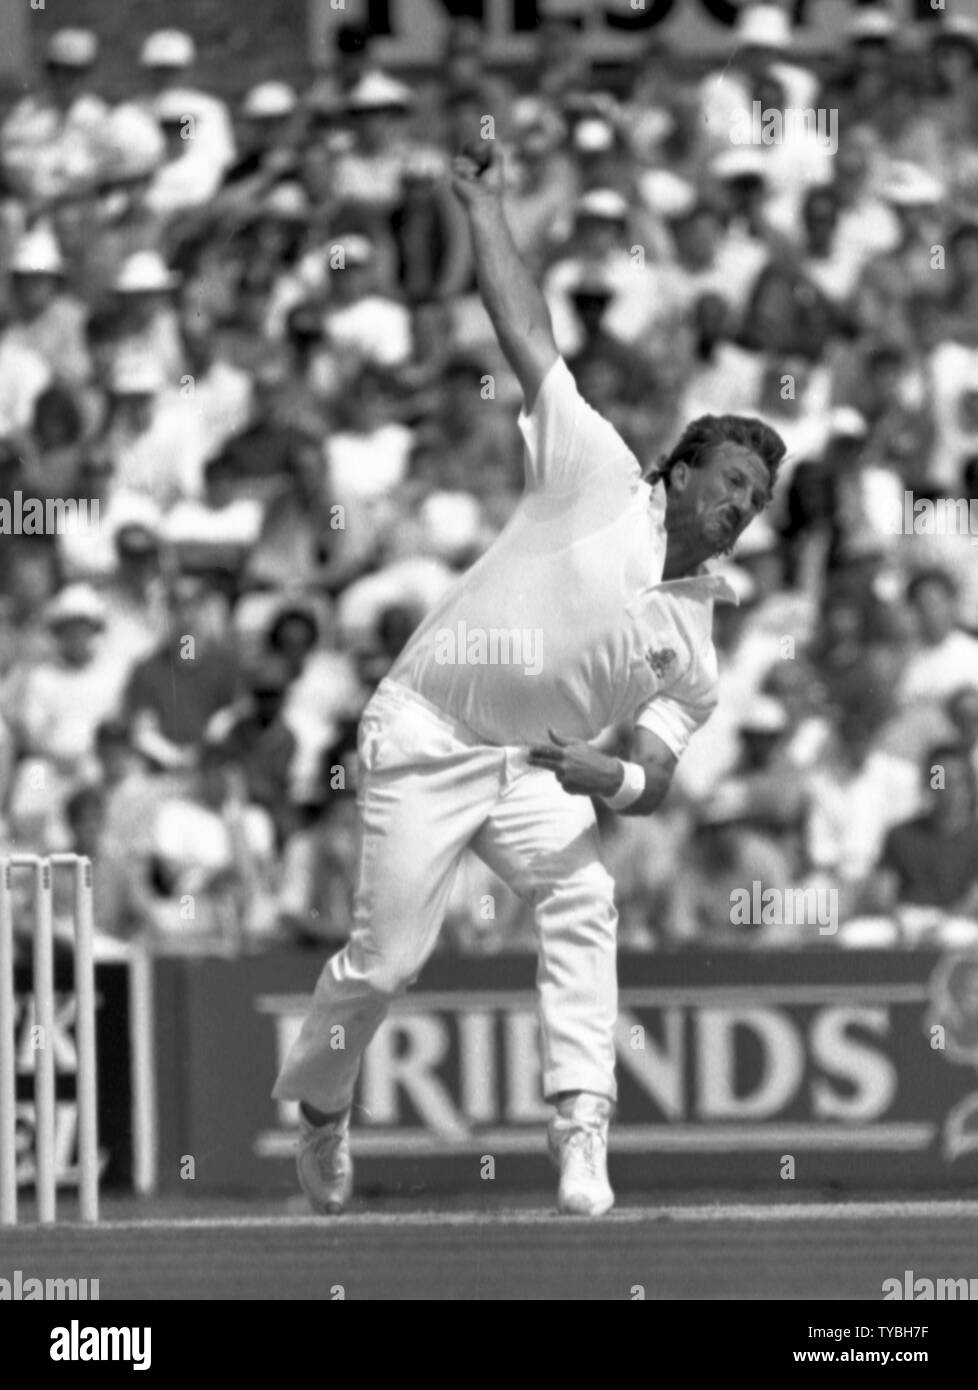 Ian Botham Cricket Legend #1 10x8 Photo 